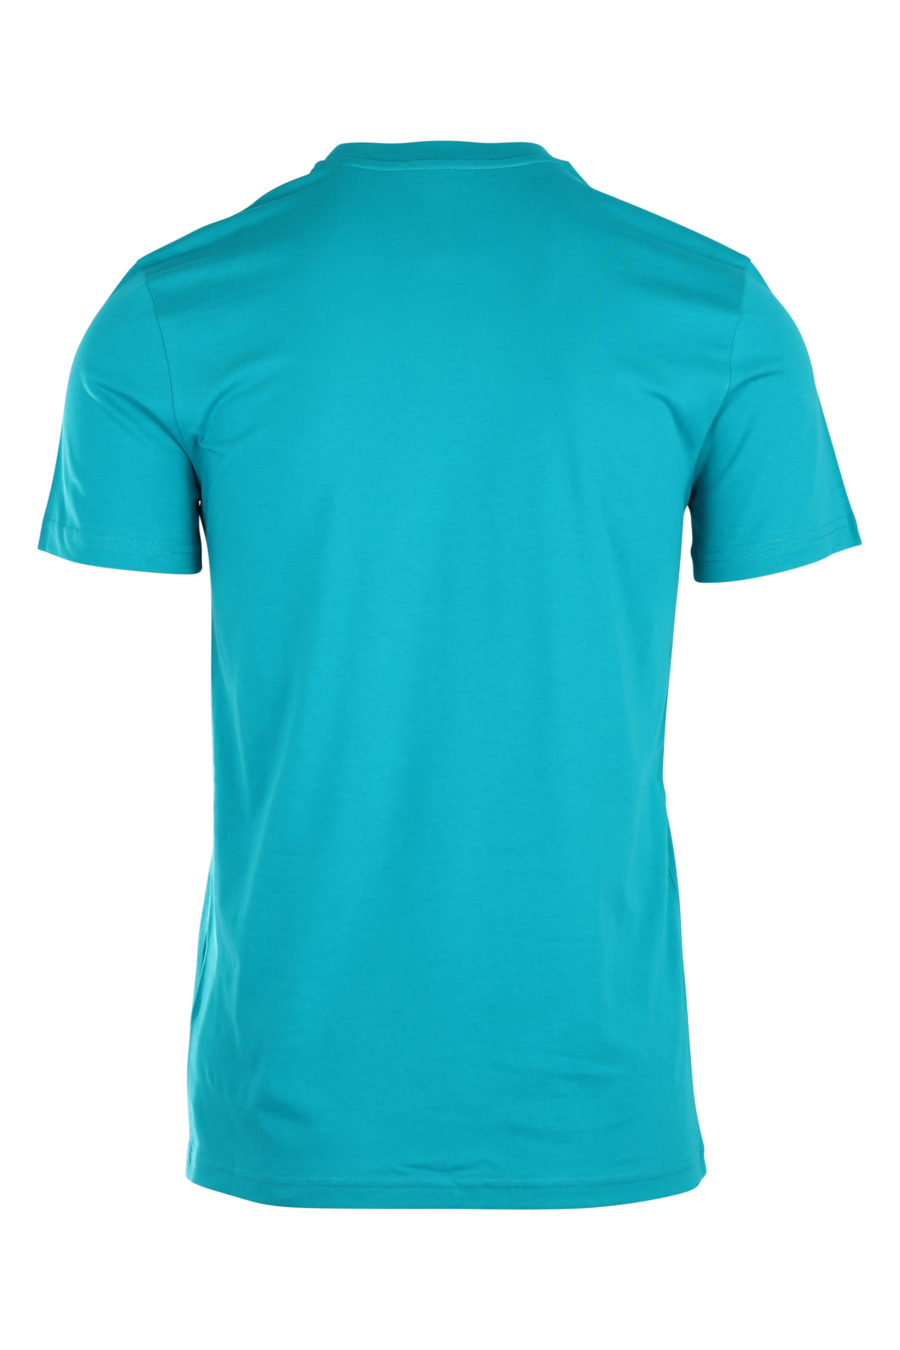 Camiseta color turquesa con logotipo grande "fantasy" - IMG 9923